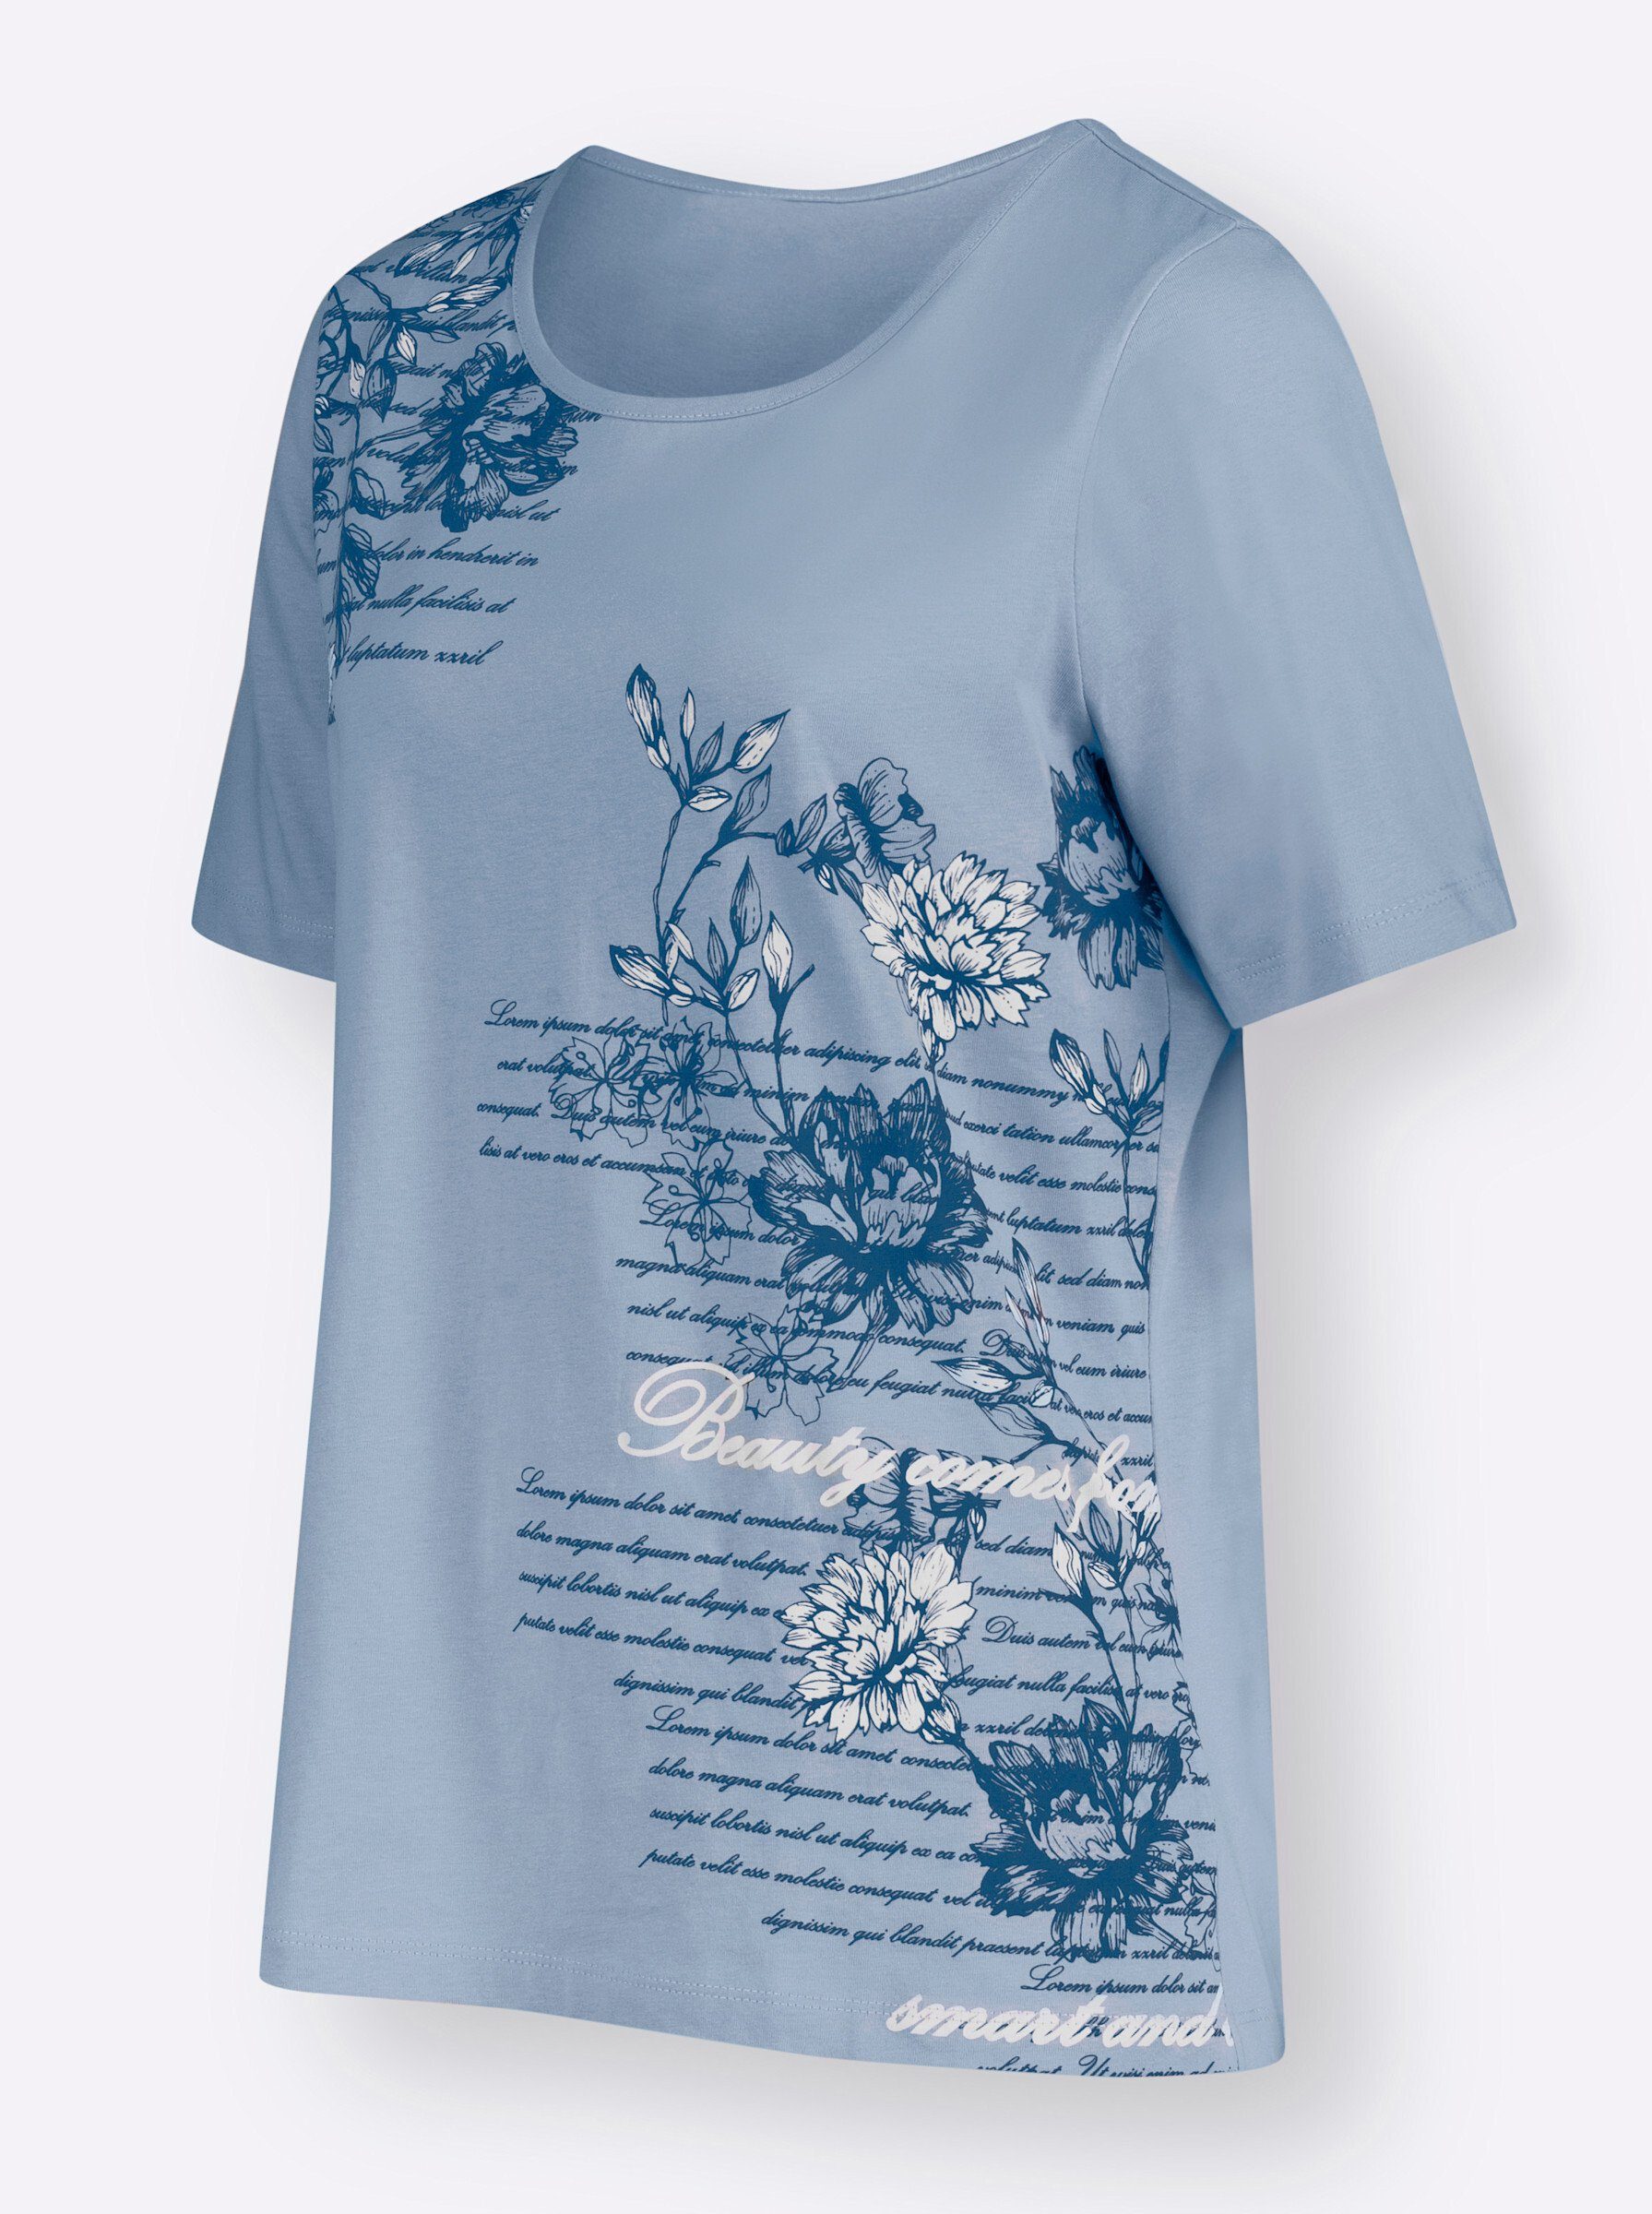 an! Sieh bleu-bedruckt T-Shirt